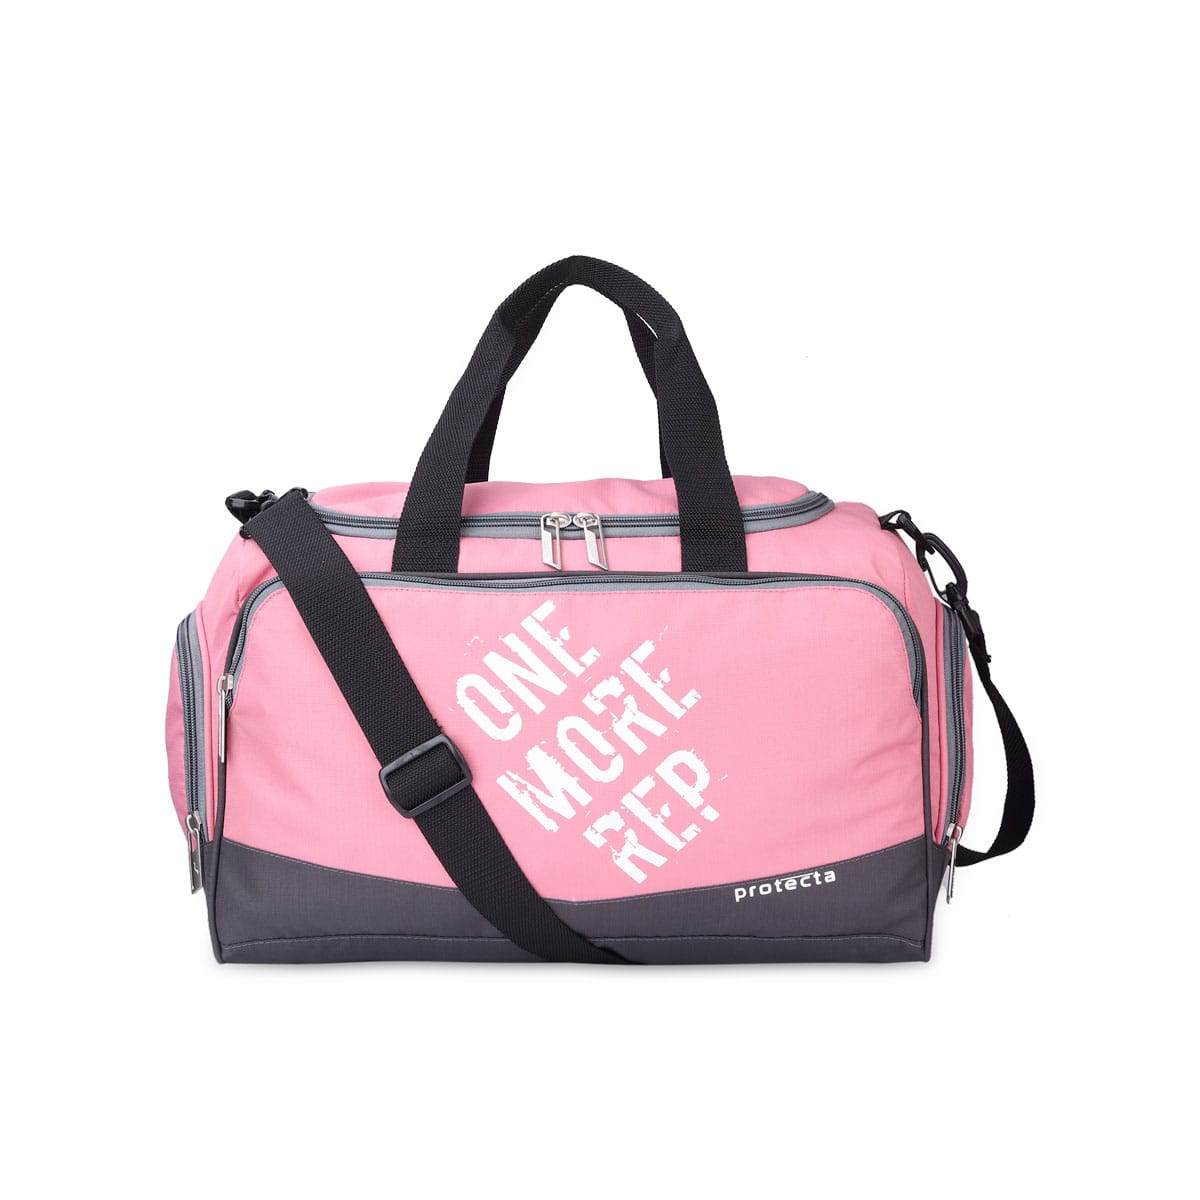 Nike Gym Club Bag Pink | Traininn